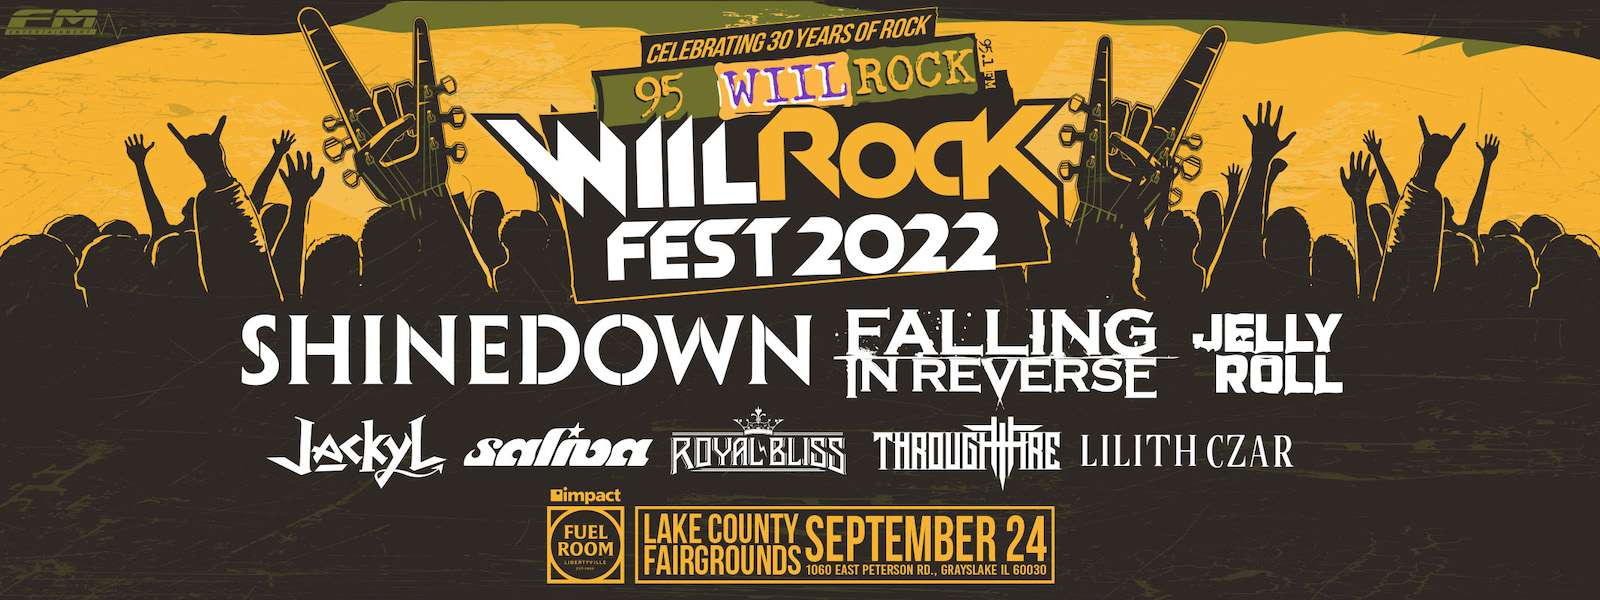 WIIL Rock Fest